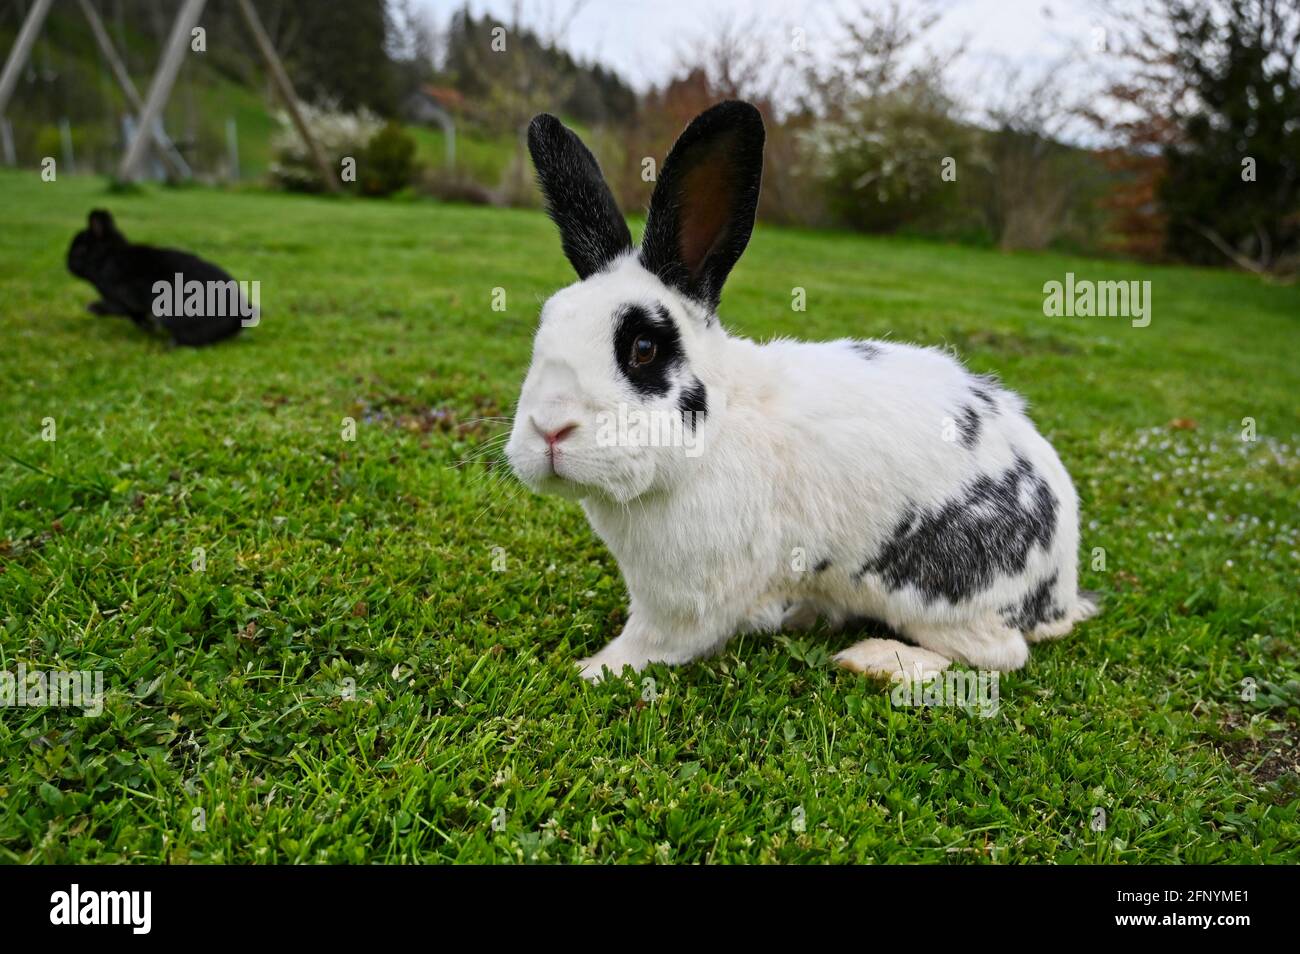 Schwarz und weiß Haustier Kaninchen mit langen schwarzen Ohren und panda  Augen in einem Garten Gras essen Stockfotografie - Alamy